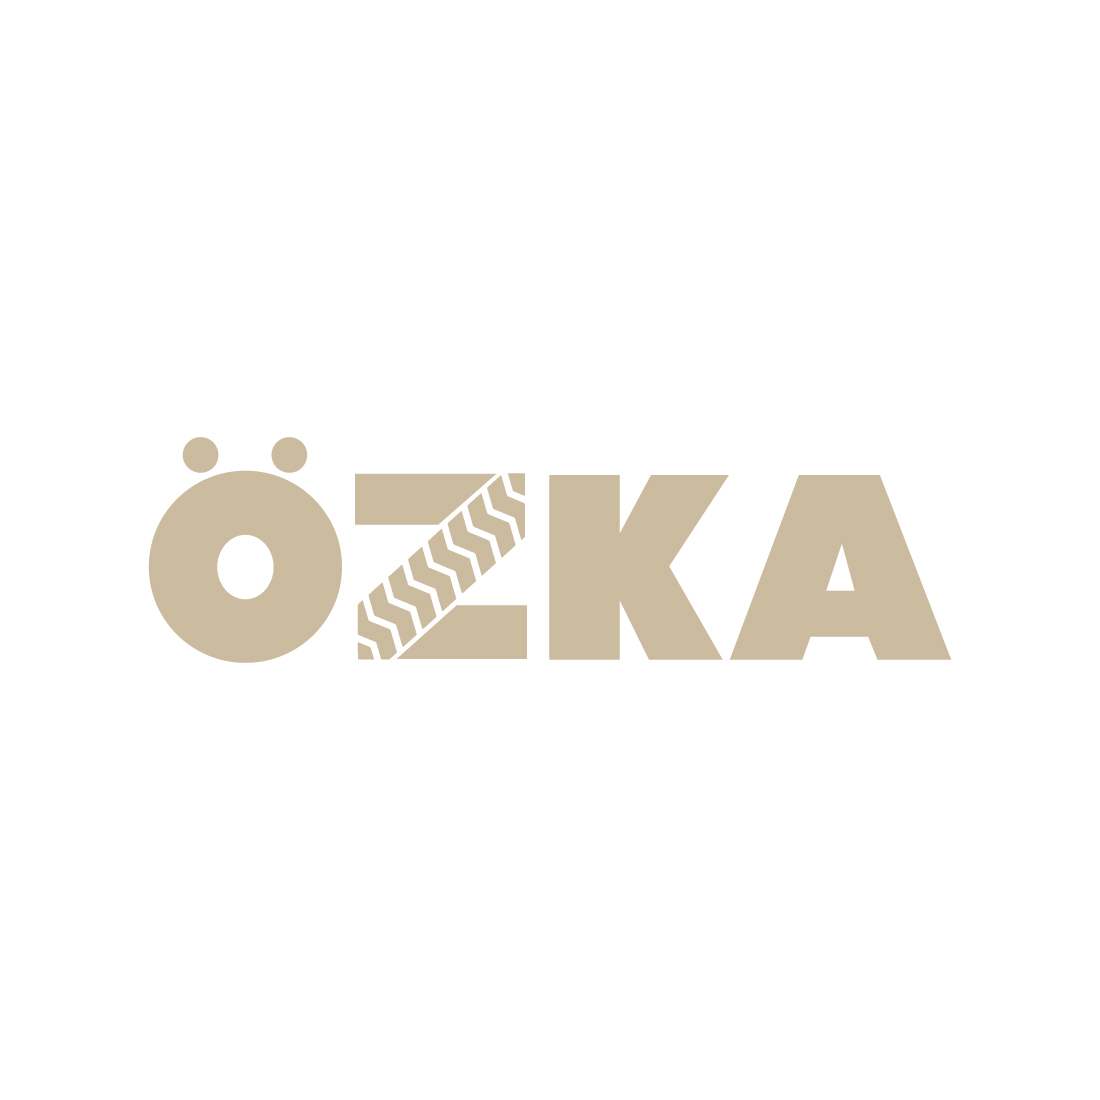 6.5/80/13 Ozka Knk52 pr6 - Ozka